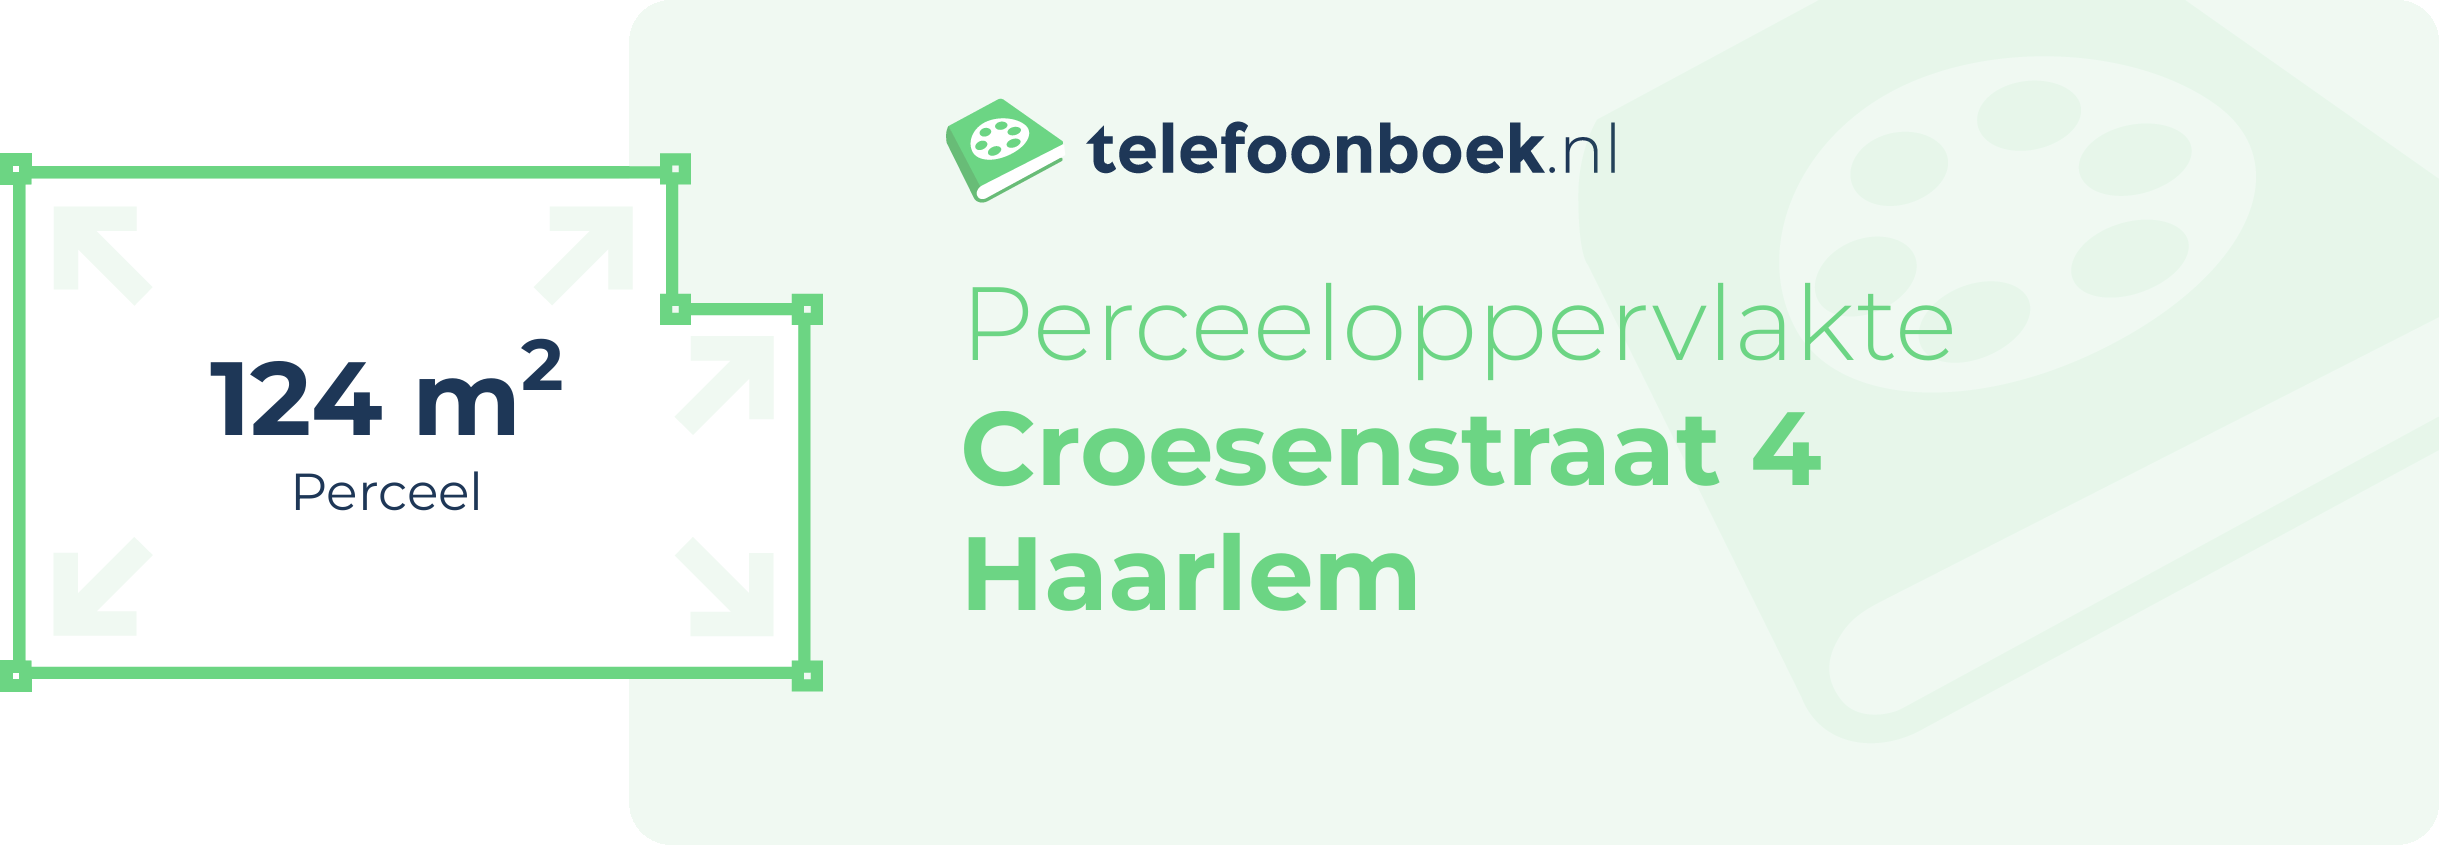 Perceeloppervlakte Croesenstraat 4 Haarlem